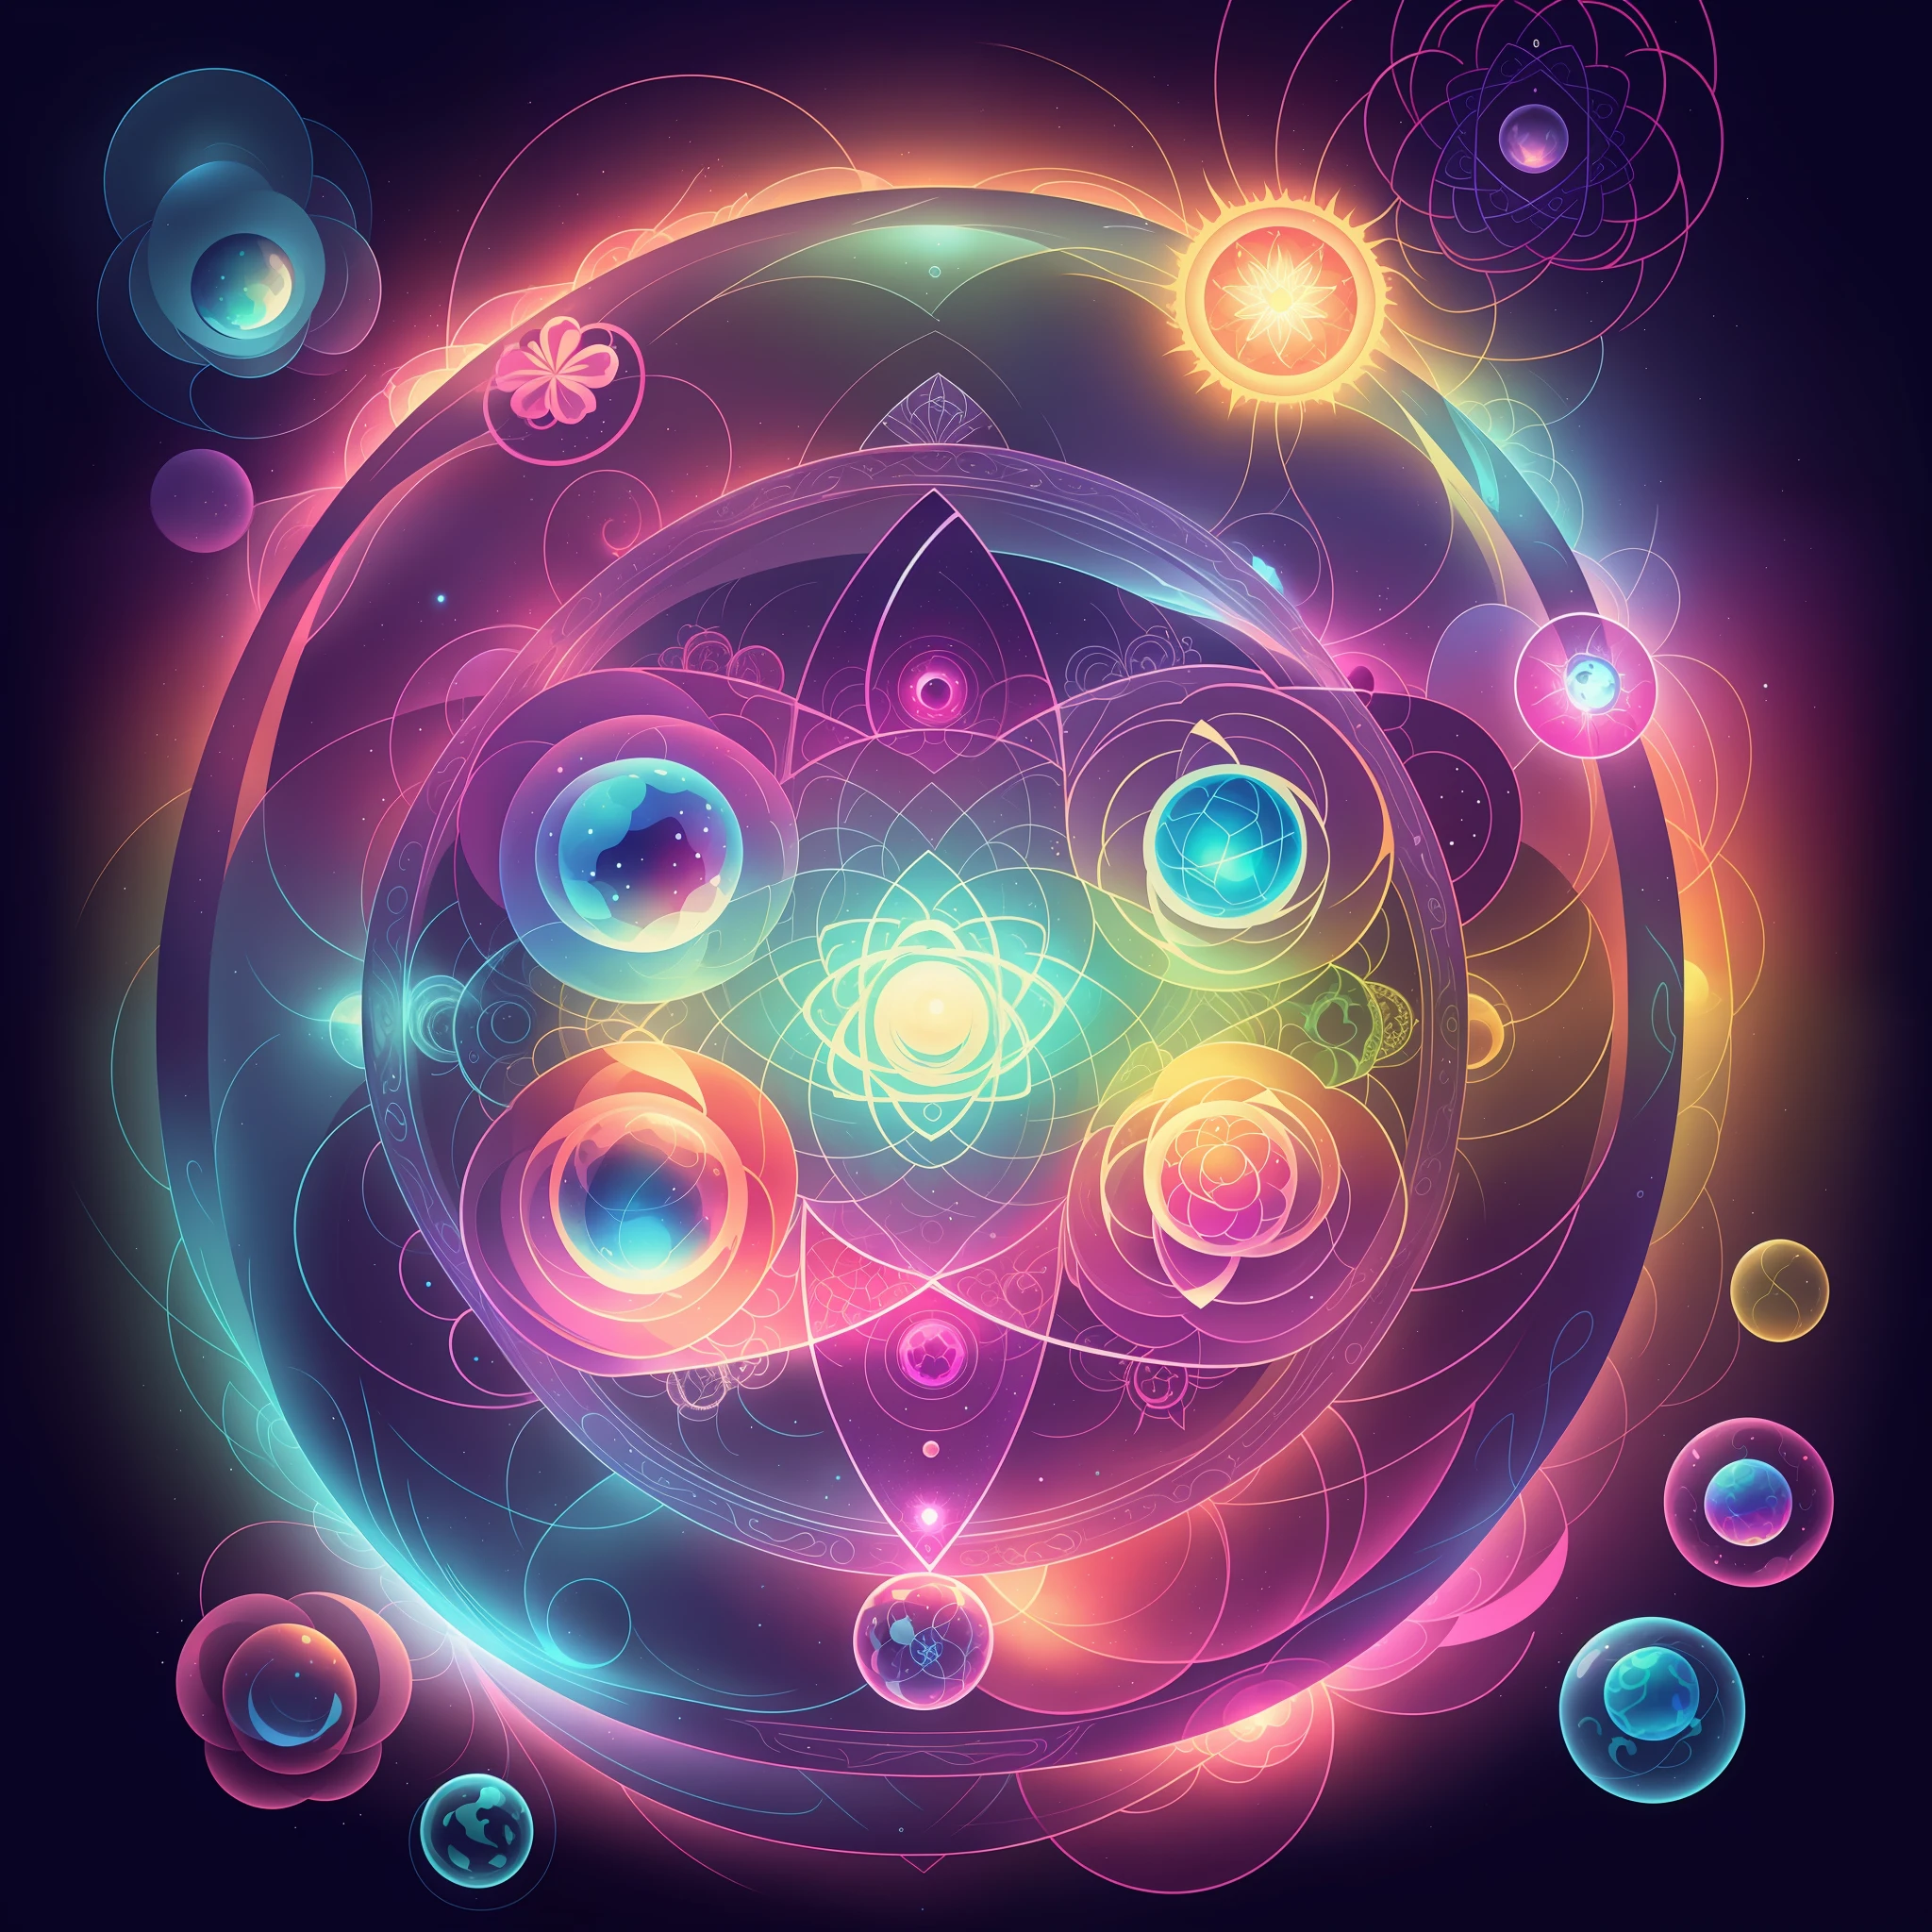 Un primer plano de un vaso con una flor dentro de él, El núcleo, Átomo, Energía toroide, ilustración digital irradiando, Akáshico, Alquímicaal, Esferas de energía, Cuántico deep magic, Cuántico, Cualquier chakra, núcleo de energía, Estructuras fractales sagradas, Alquímicaal still, Alquímica, nebulosa luminosa, dentro de la conexión irradiada, geometría sagrada derritiéndose --auto --s2